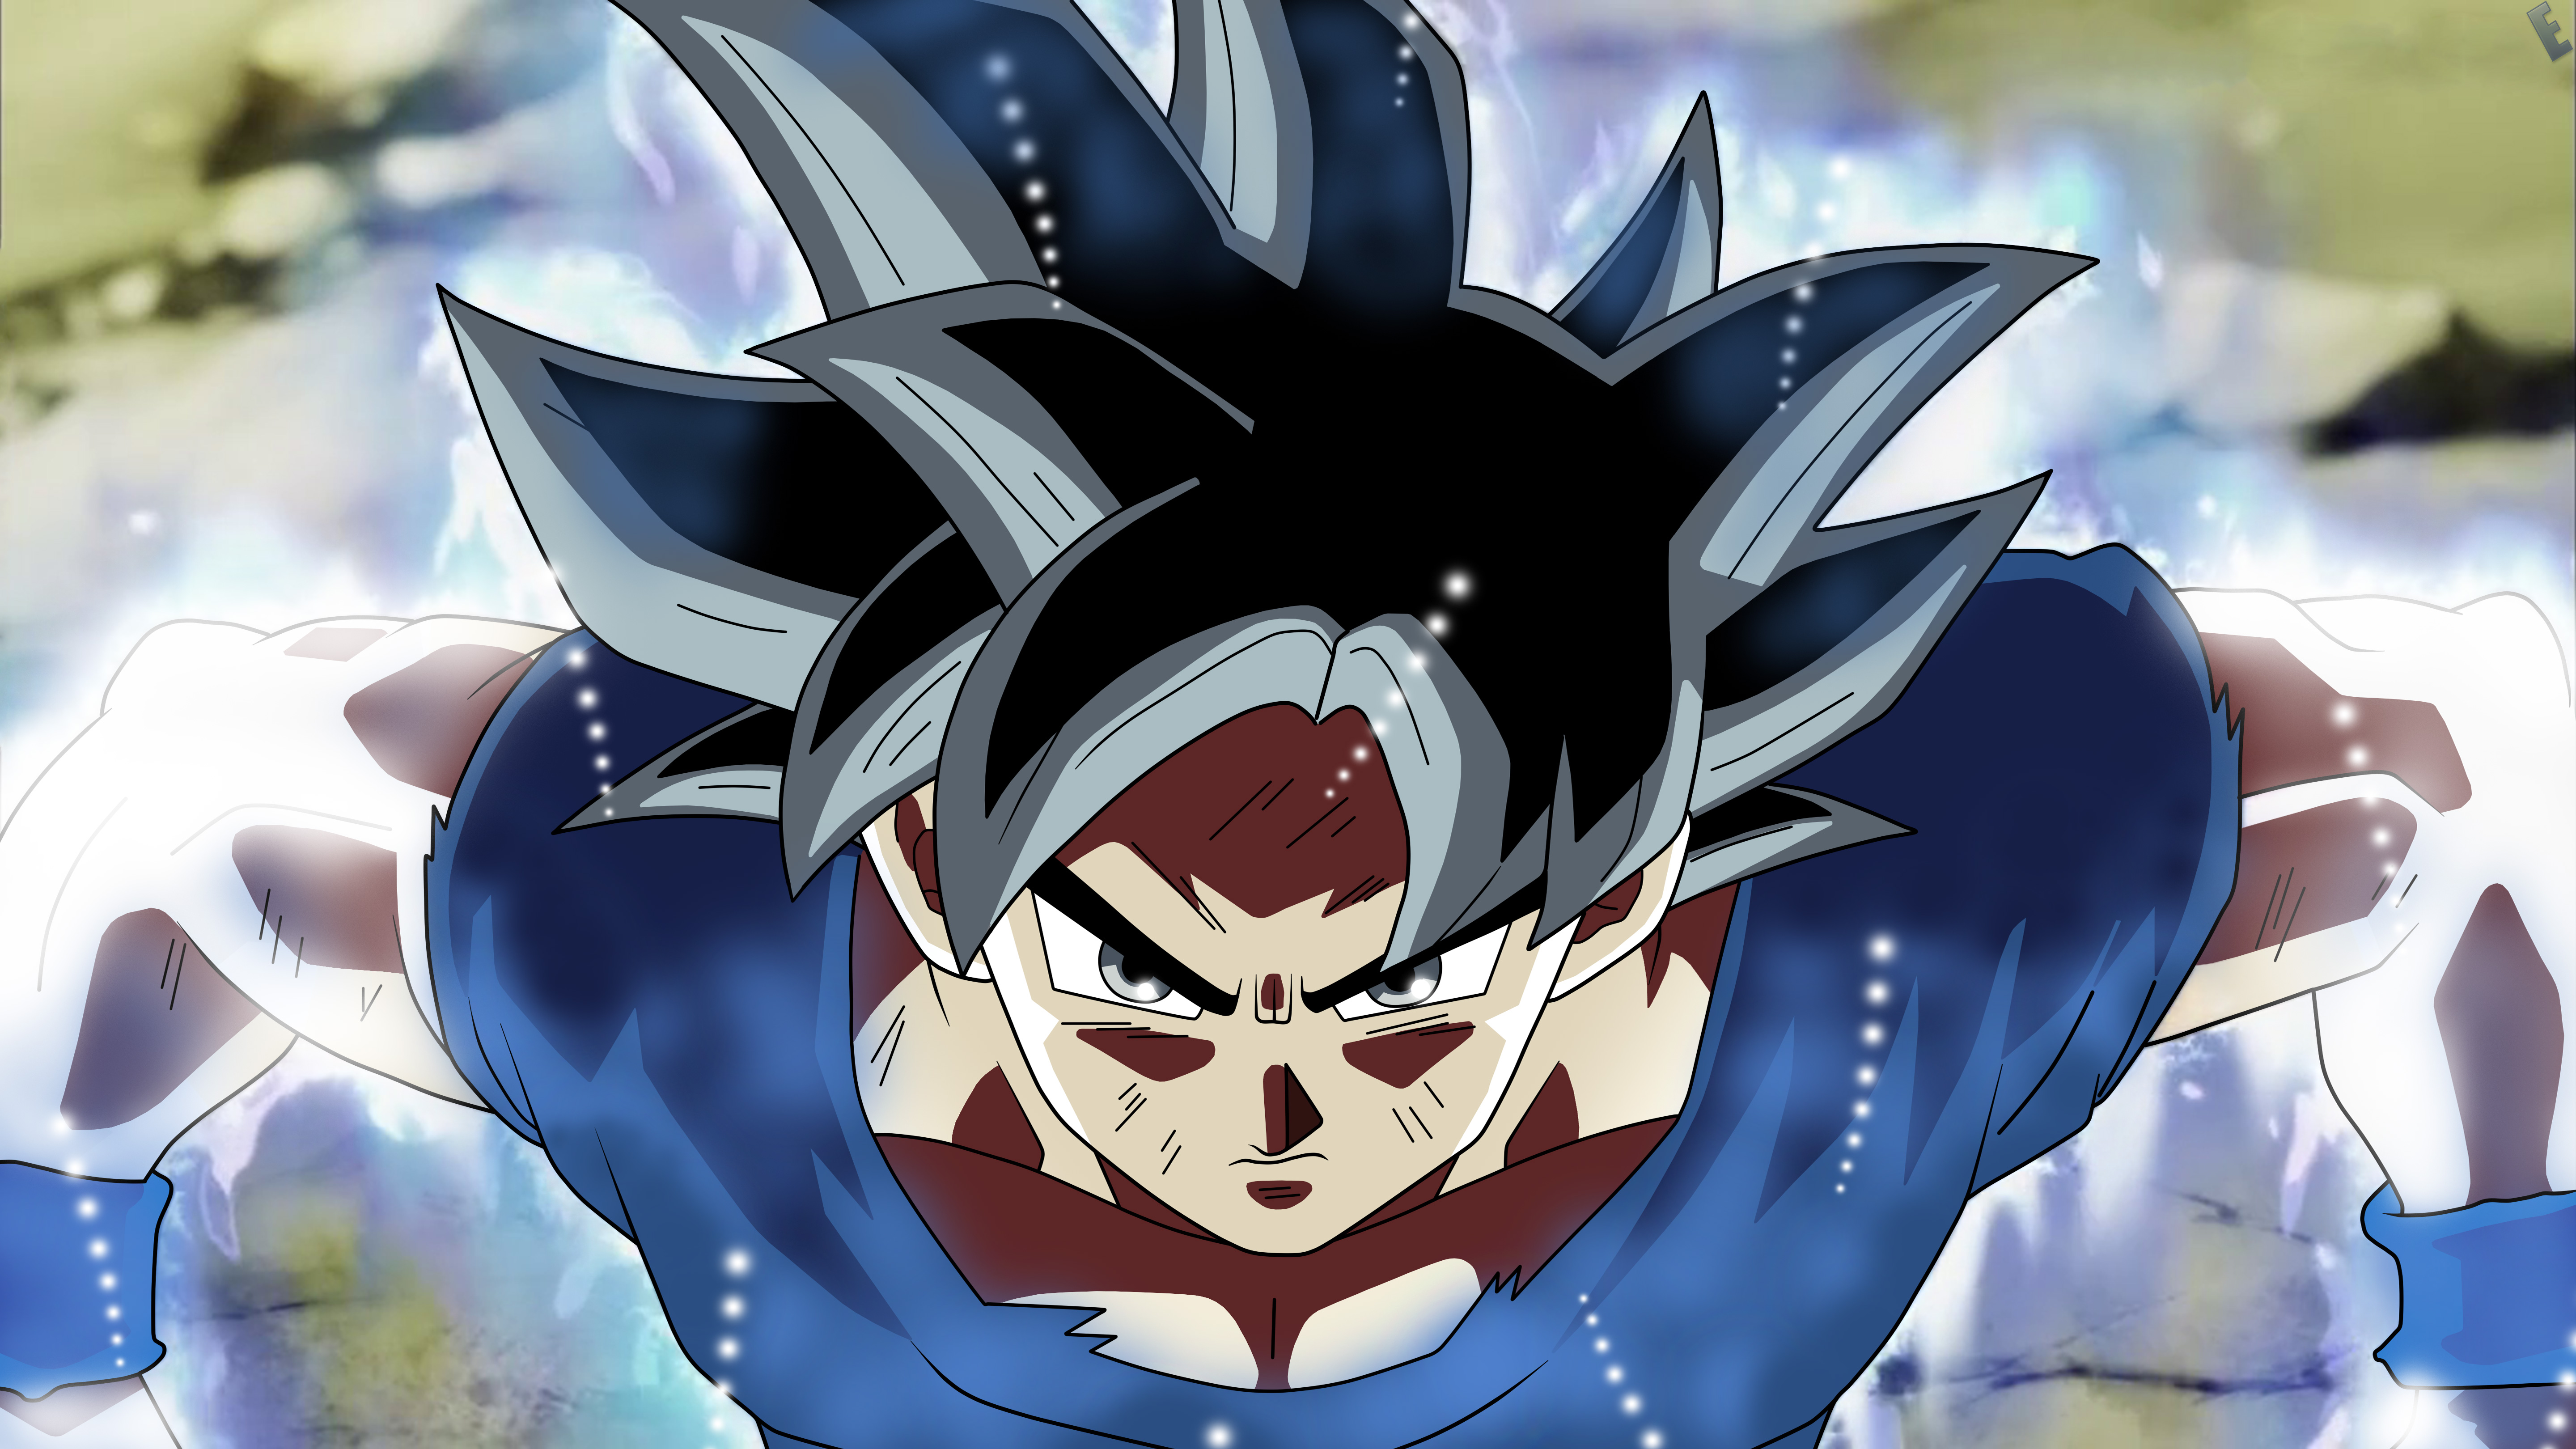 Goku Dragon Ball Super Anime 5k, HD Anime, 4k Wallpapers ...